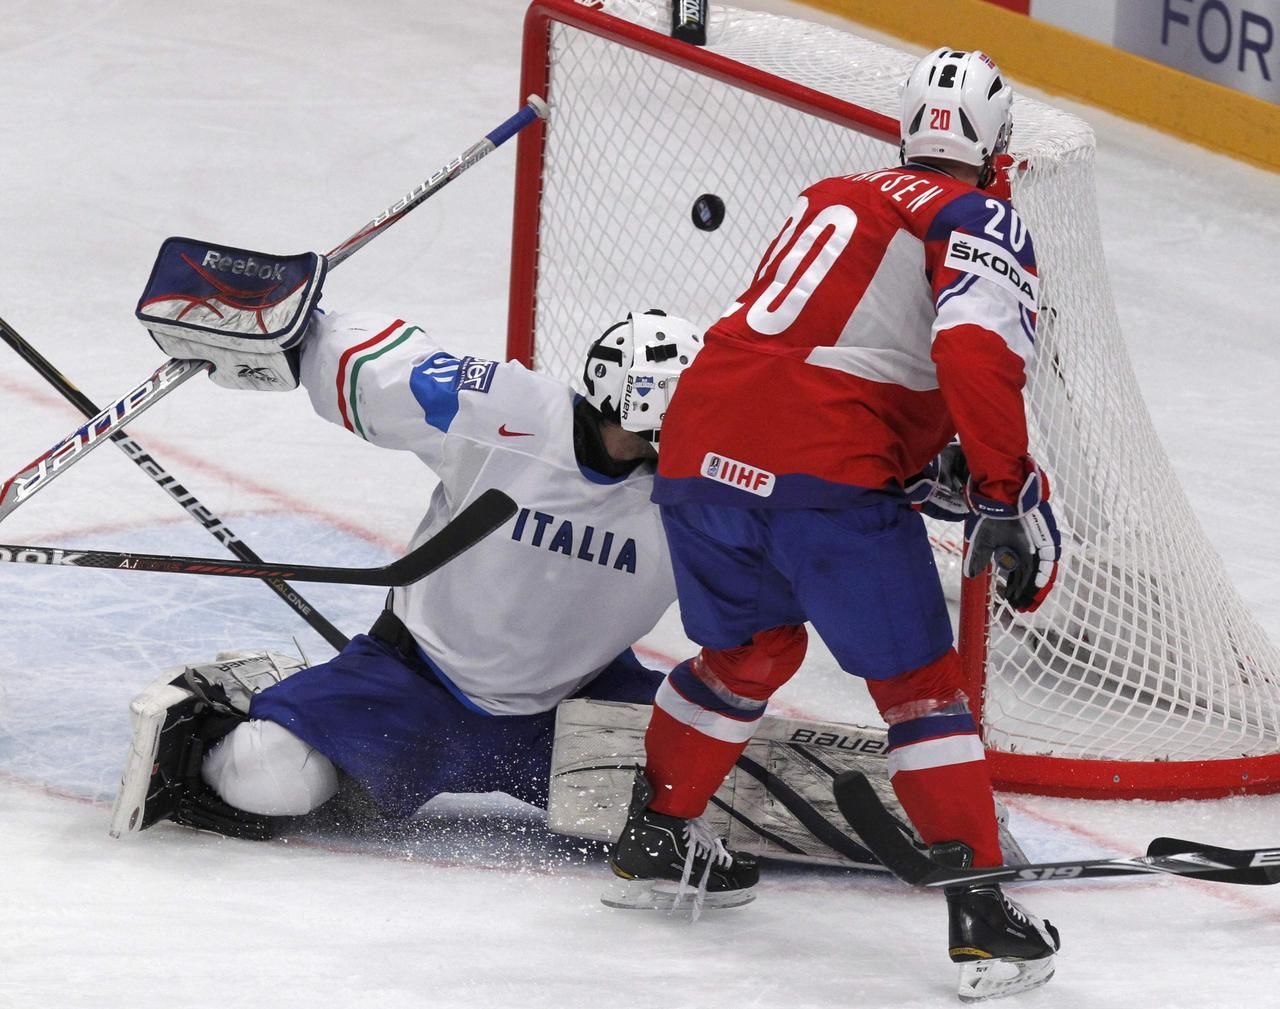 MS v hokeji 2012: Itálie - Norsko (gól Bastiansena)